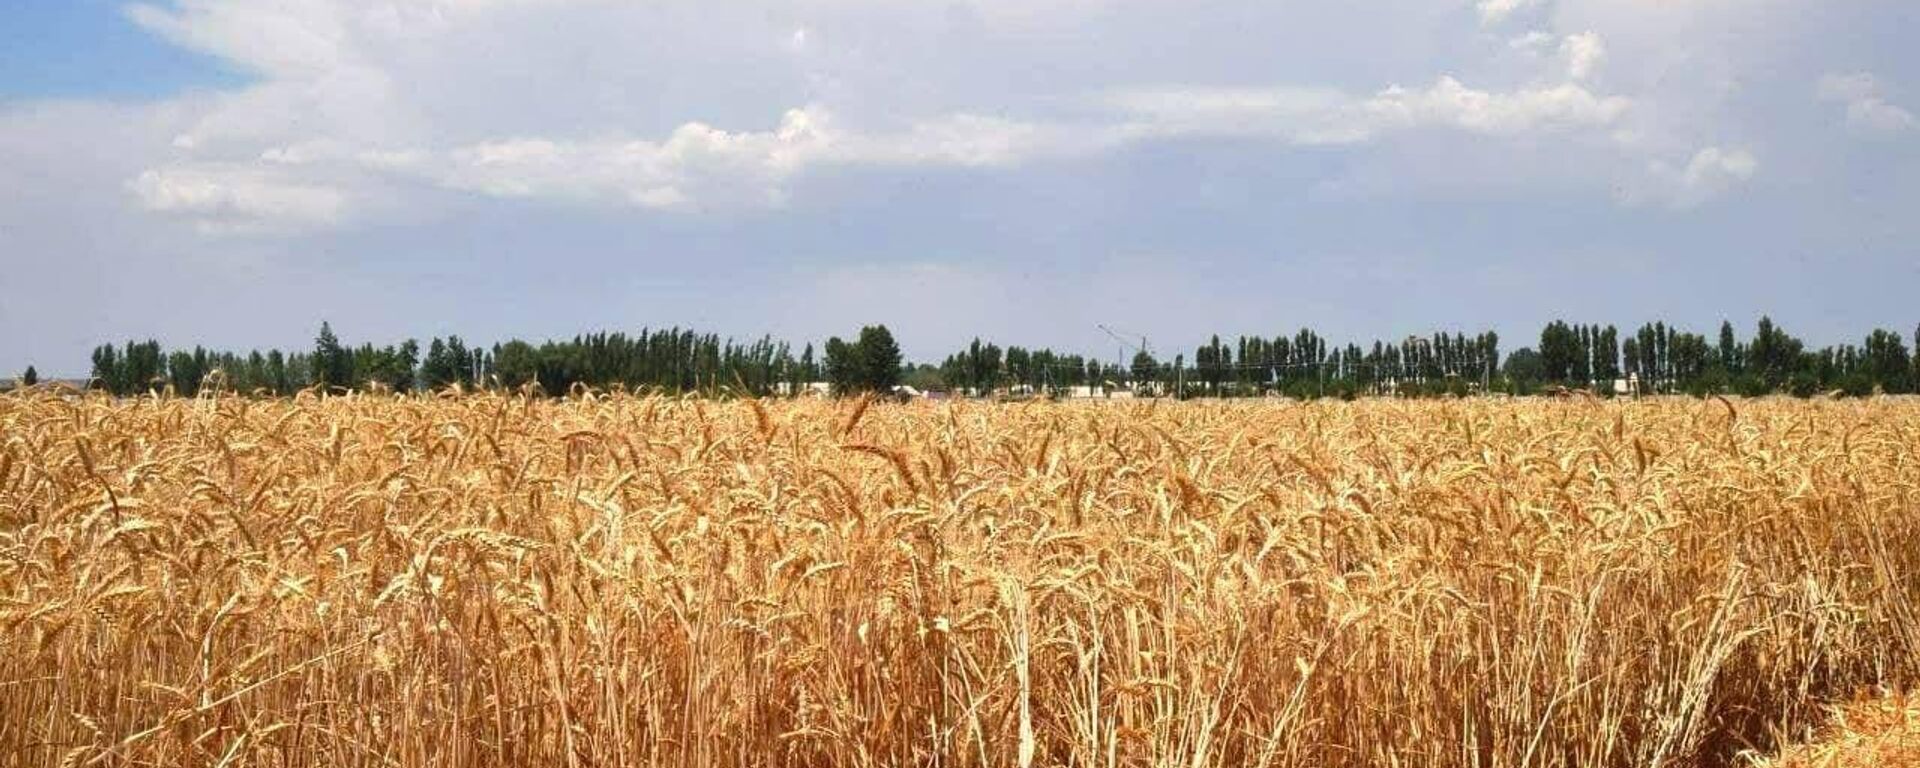 Пшеничное поле - Sputnik Узбекистан, 1920, 17.06.2021